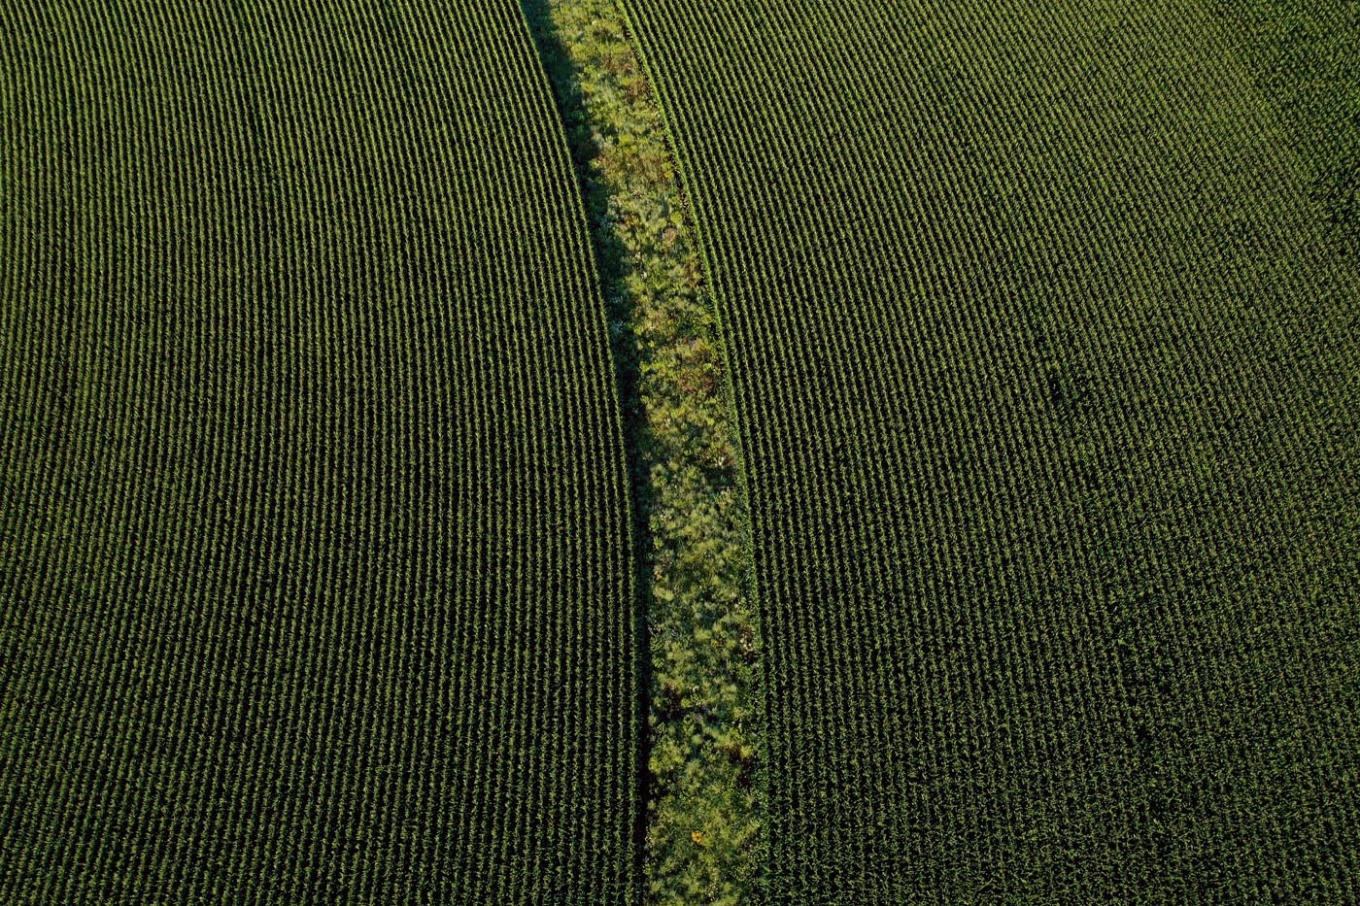 prairie strips and corn   private farm near rowley, ia